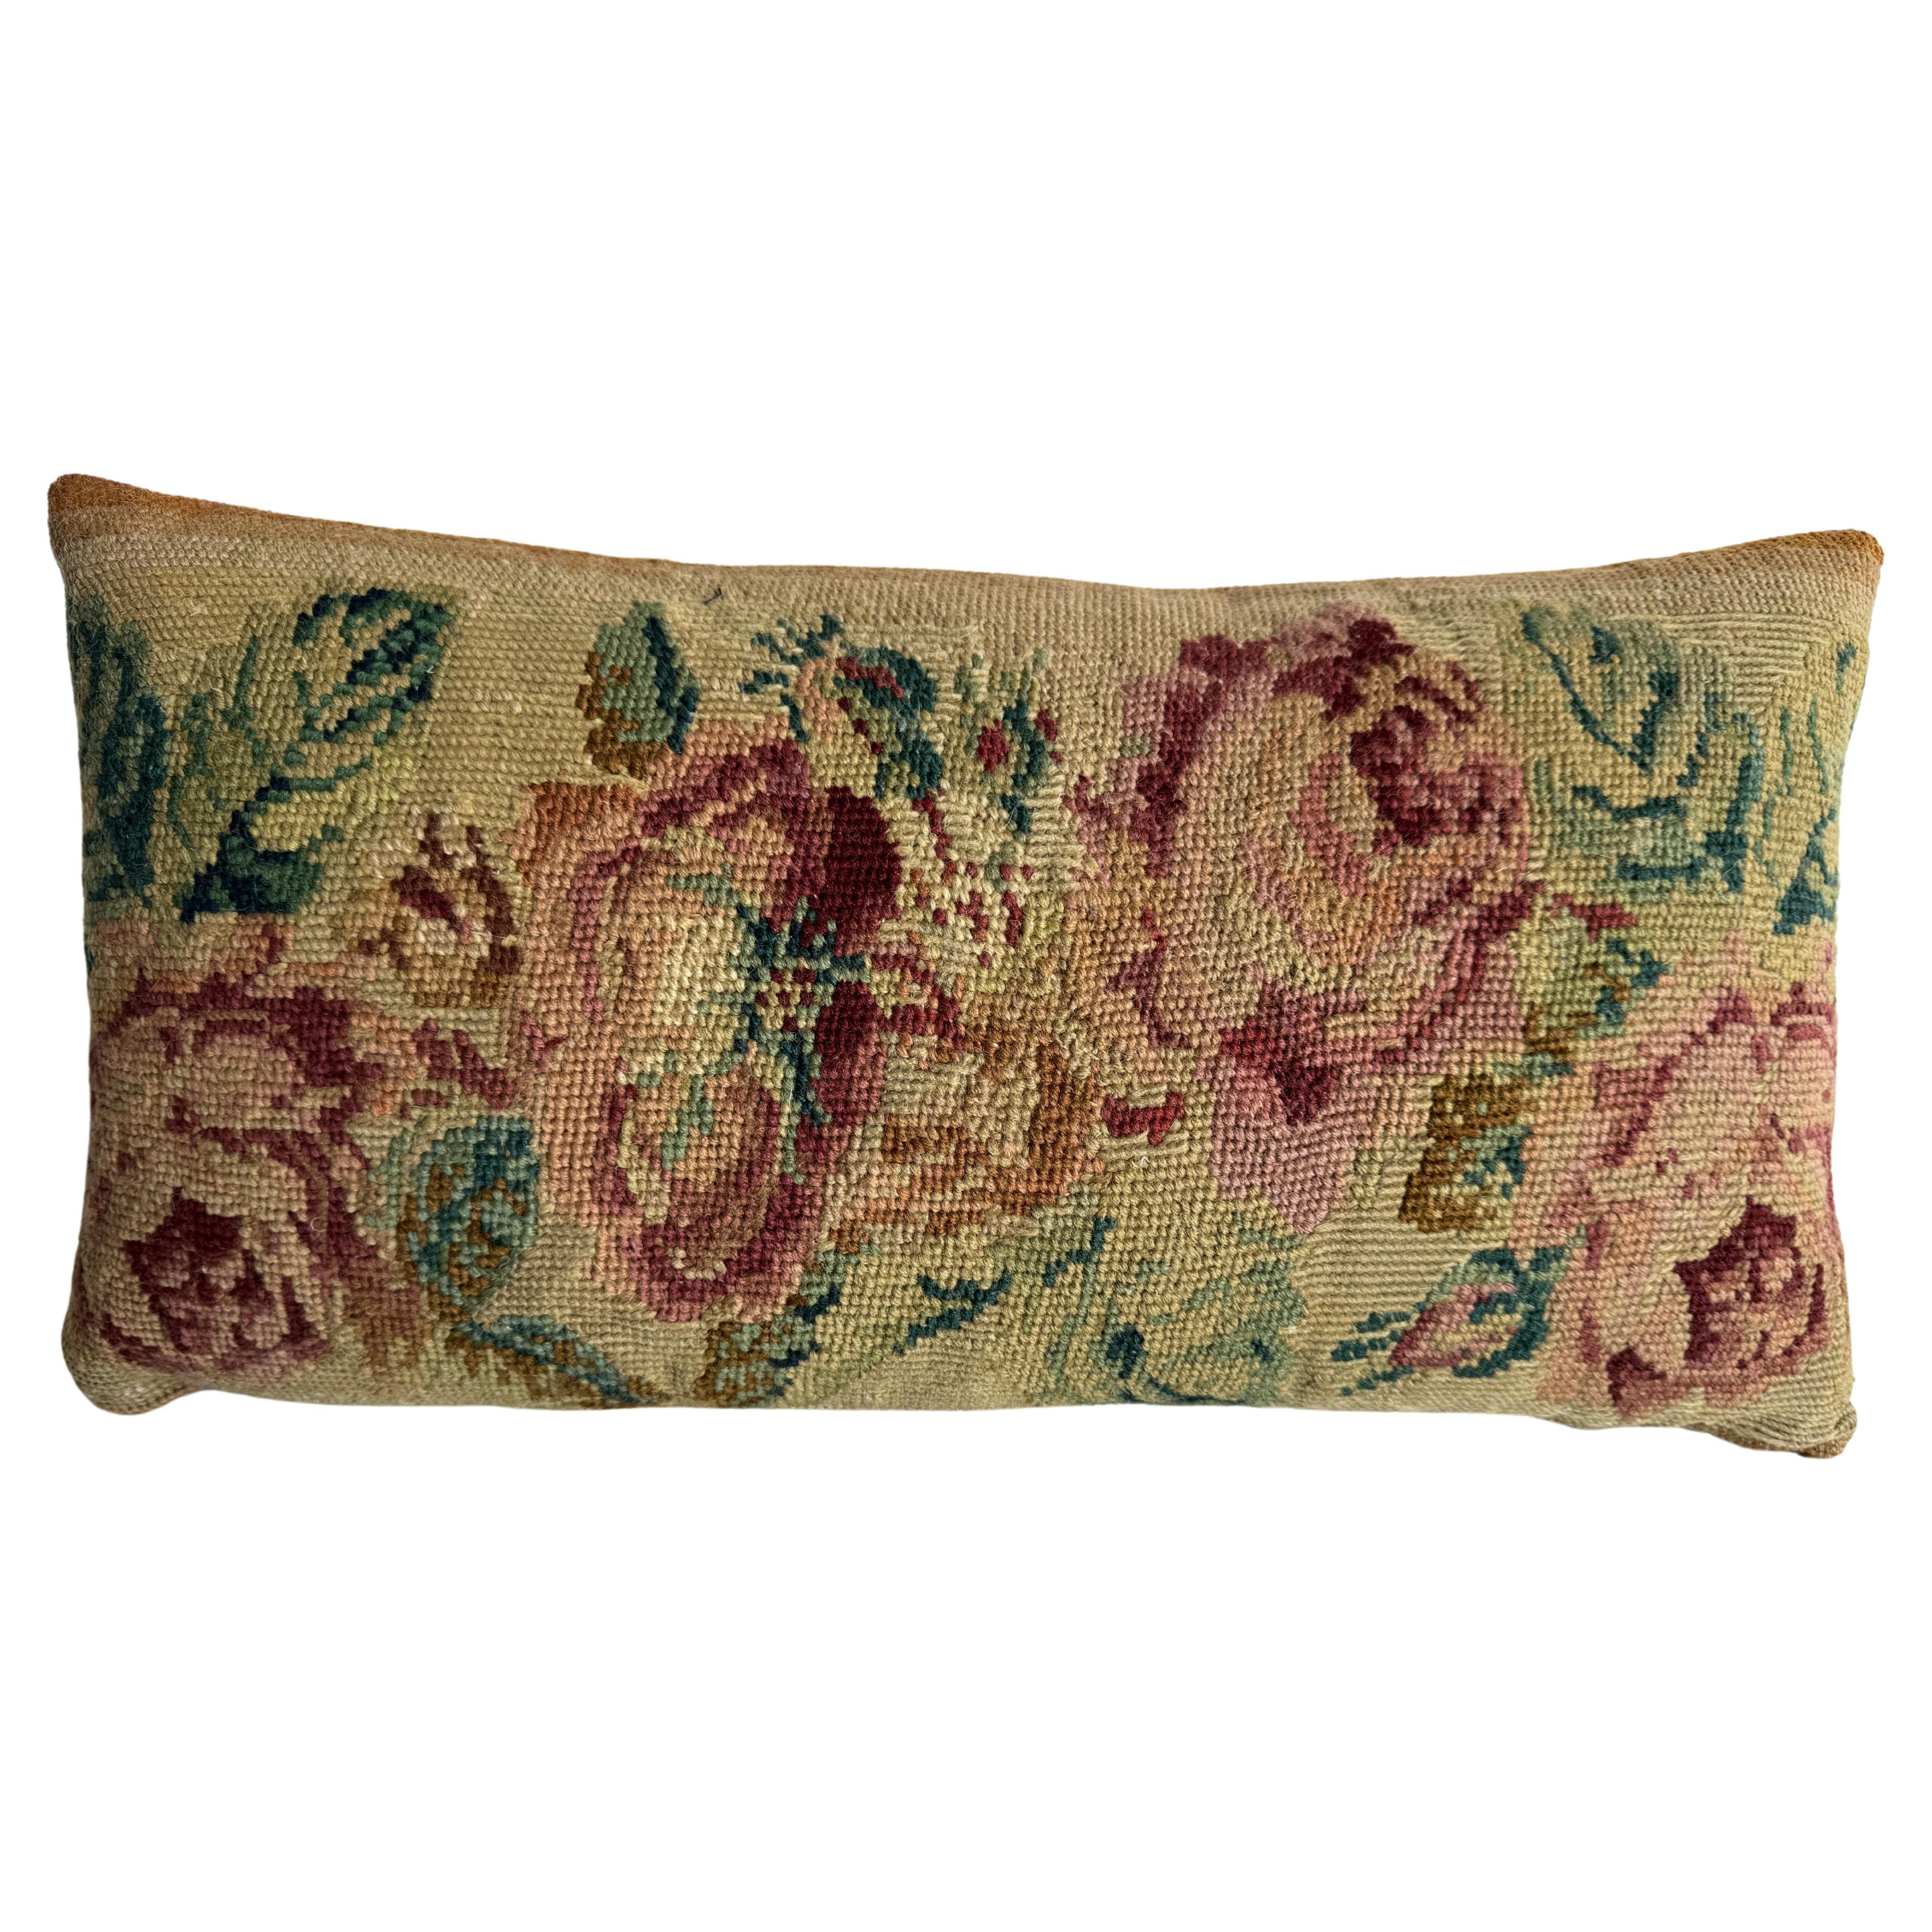 1851 English Needlework 19" x 10" Pillow